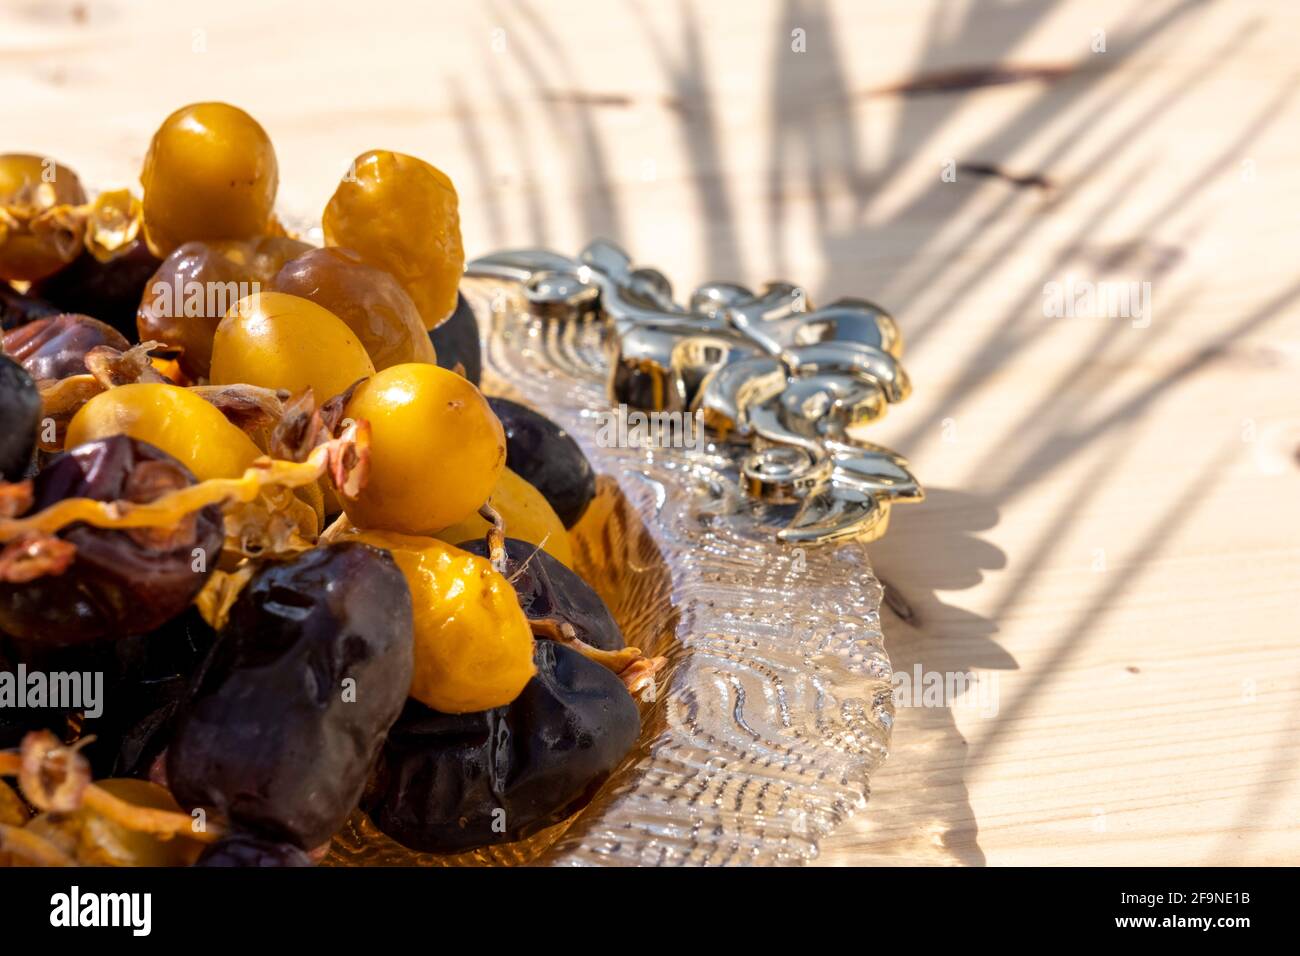 Religiöse muslimische Fastenfest und heiligen Monat Ramadan Konzept: Viele süß braun und gelb getrockneten Dattdaten Früchte auf einem verzierten Teller. Holztisch. Stockfoto